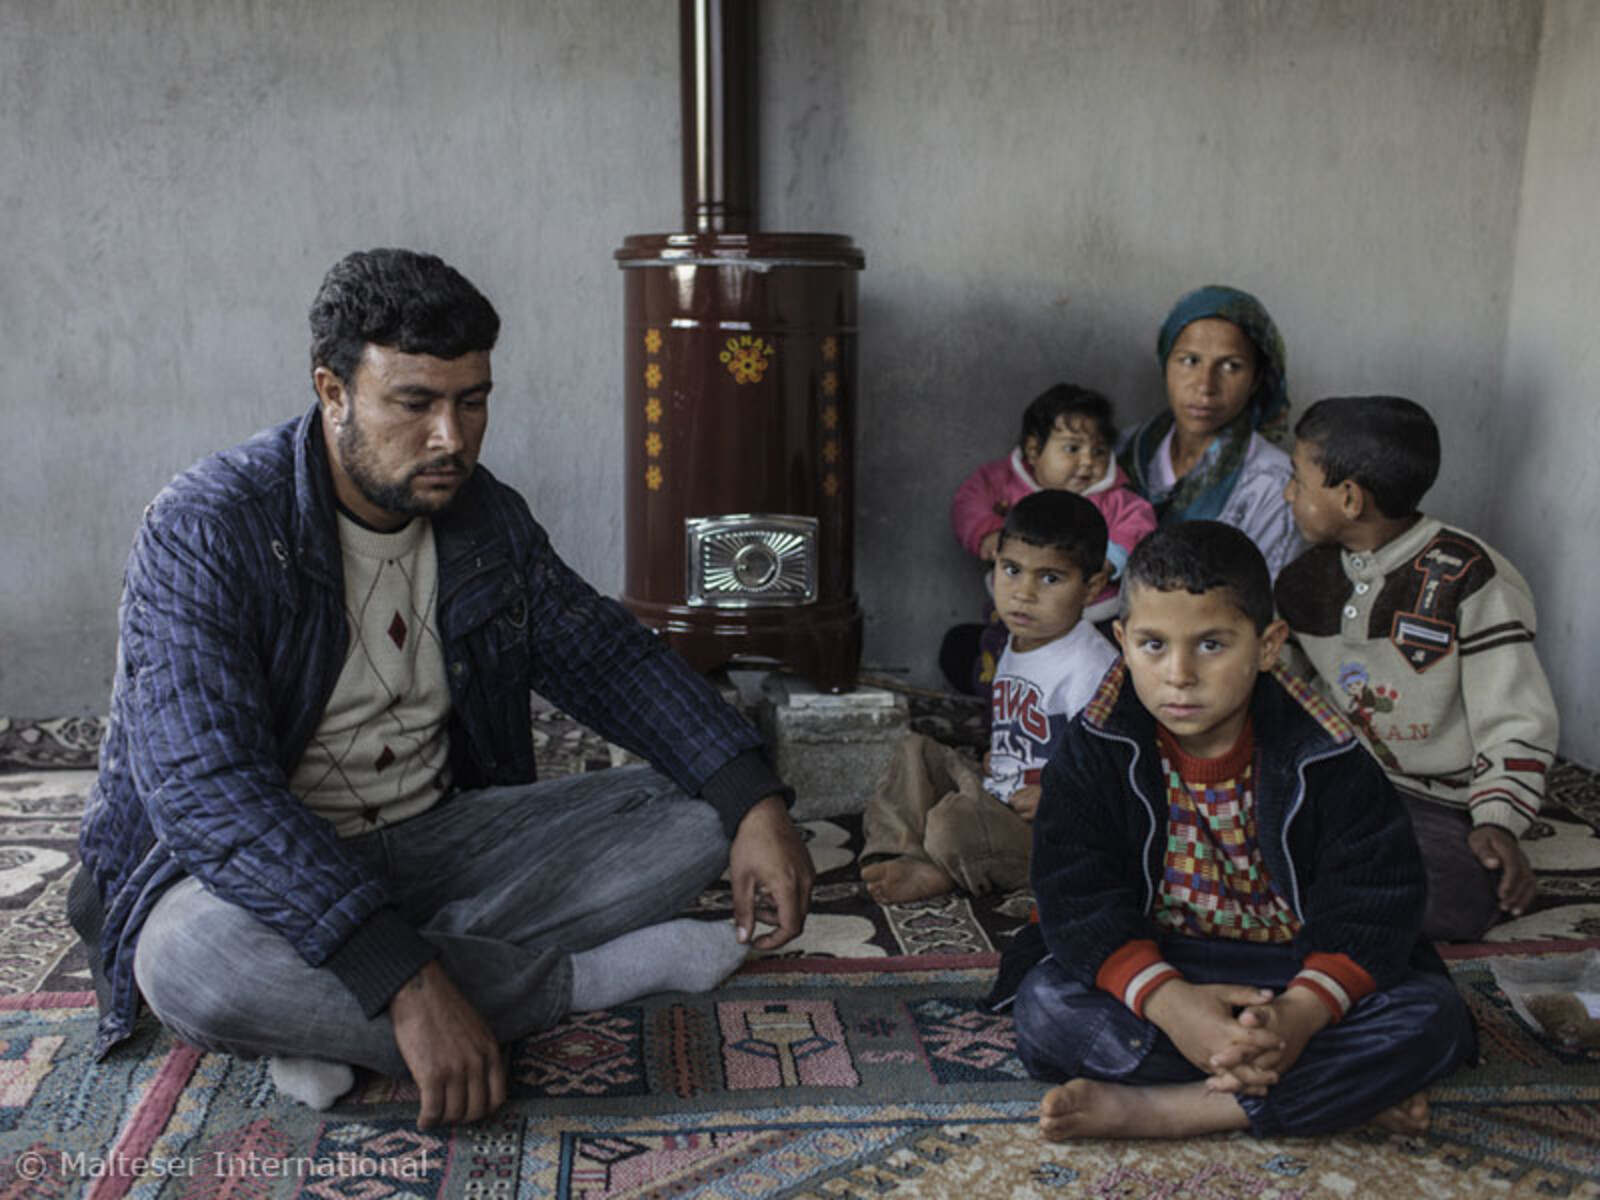 Diese Familie floh aufgrund der gewaltsamen Ausschreitungen in Syrien in die Türkei. Von den Maltesern erhielt sie Winterkleidung und einen Heizofen.